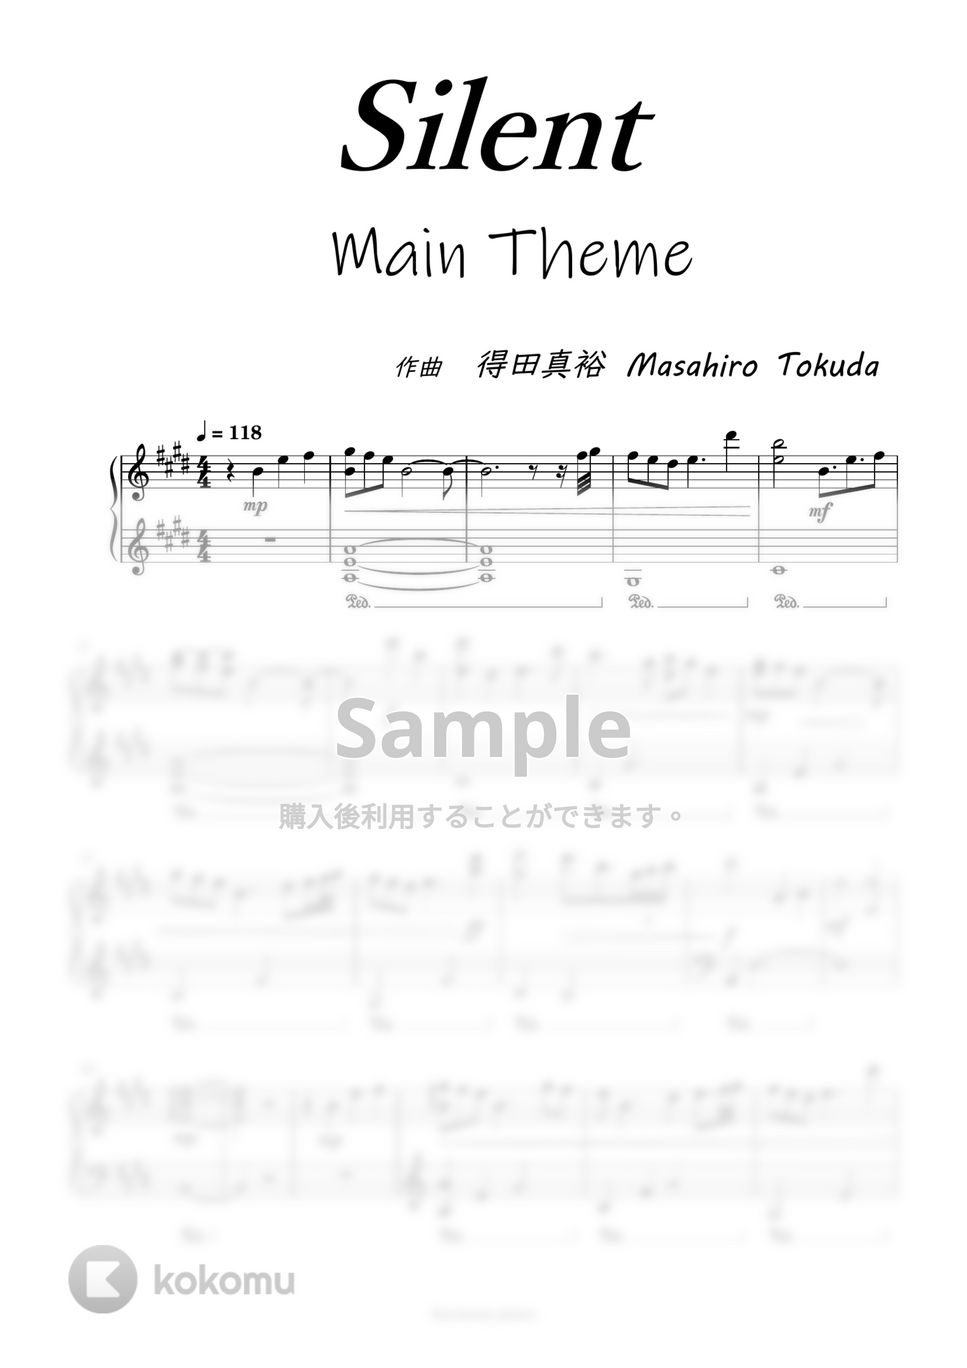 silent - メインテーマ (目黒蓮/川口春奈) by harmony piano